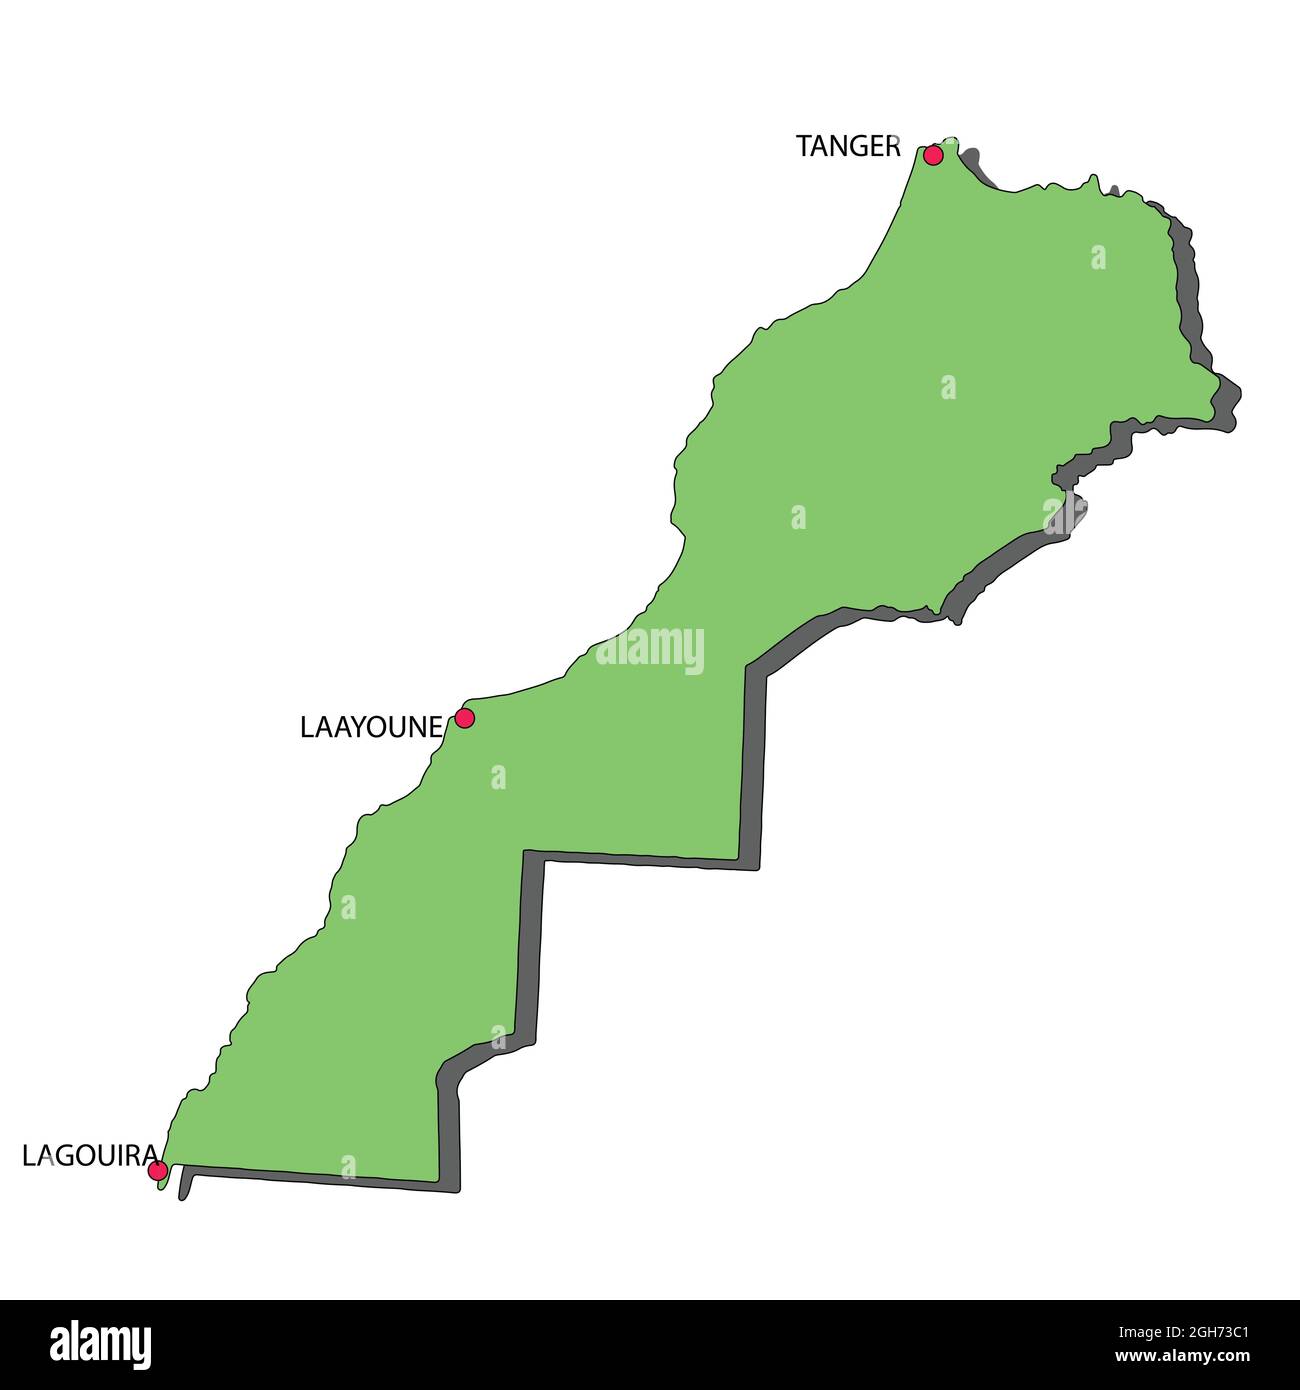 Marocco Mappa Green Color 3D che mostra 3 Città da Nord ad Ovest...Tangeri a Lagouira Illustrazione Vettoriale